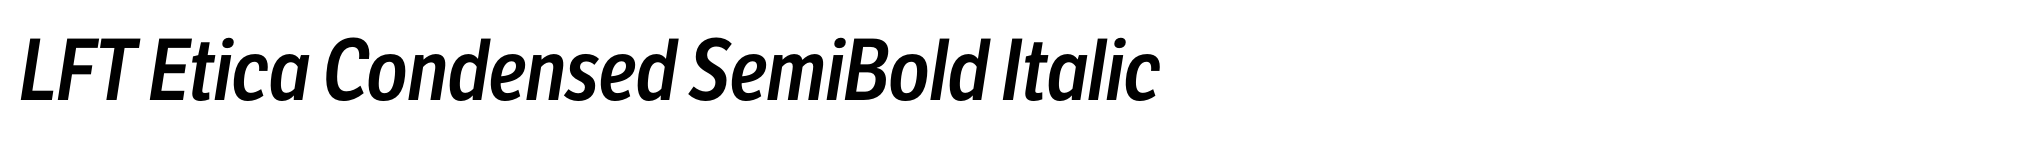 LFT Etica Condensed SemiBold Italic image